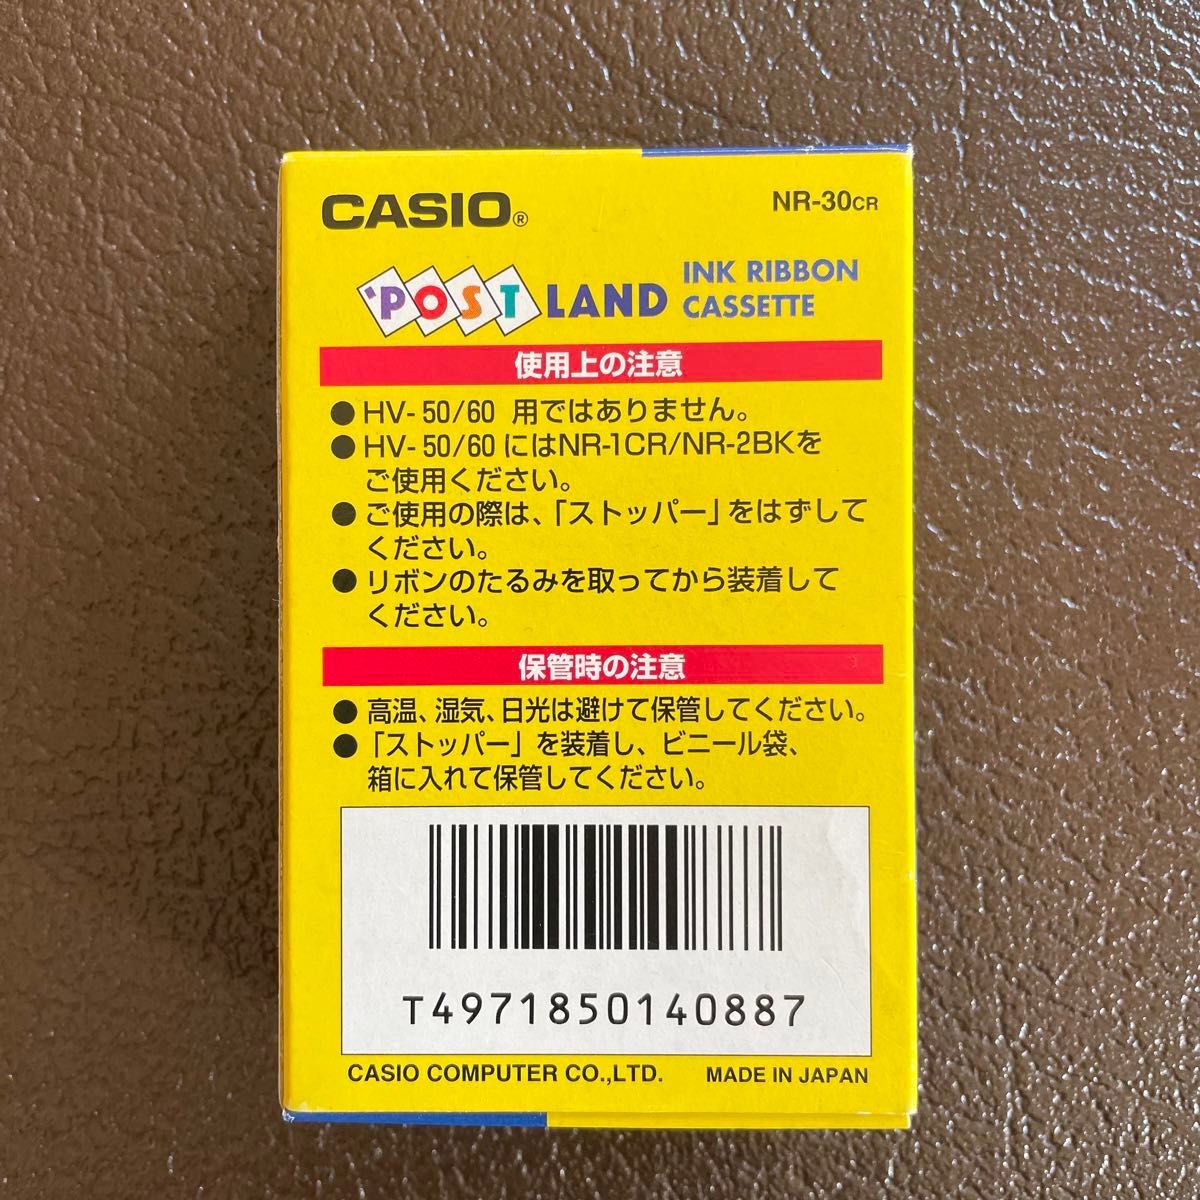 CASIO POST LAND カシオ ポストランド カラー インクリボン NR-30CR 